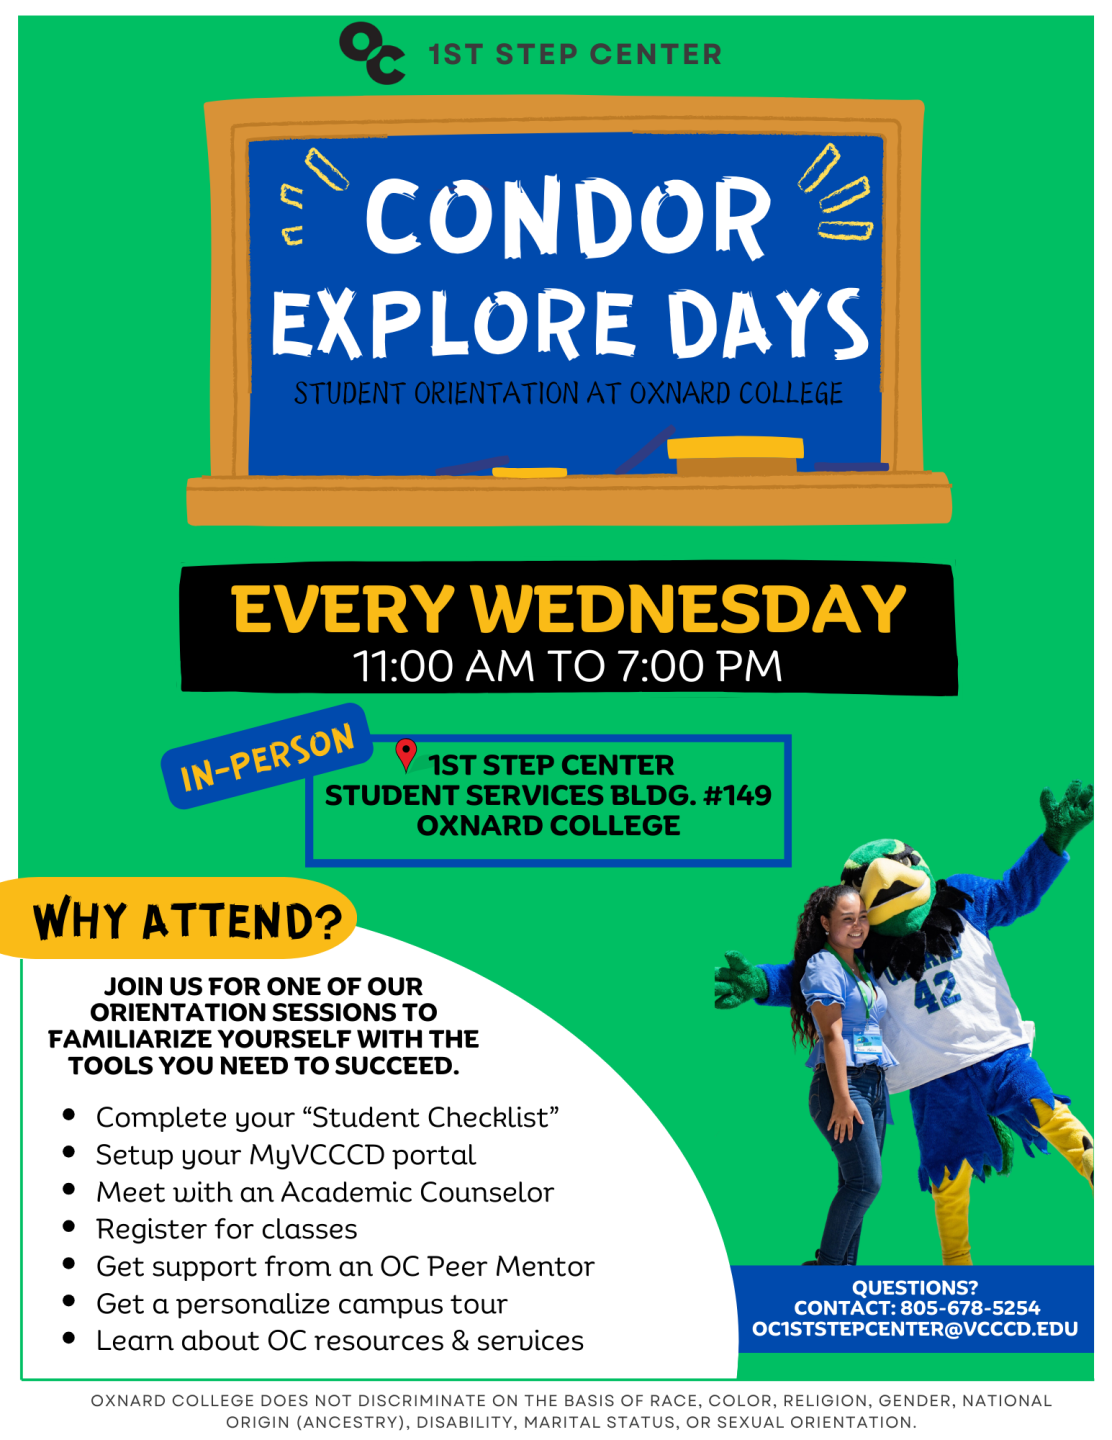 Condor Explore Days